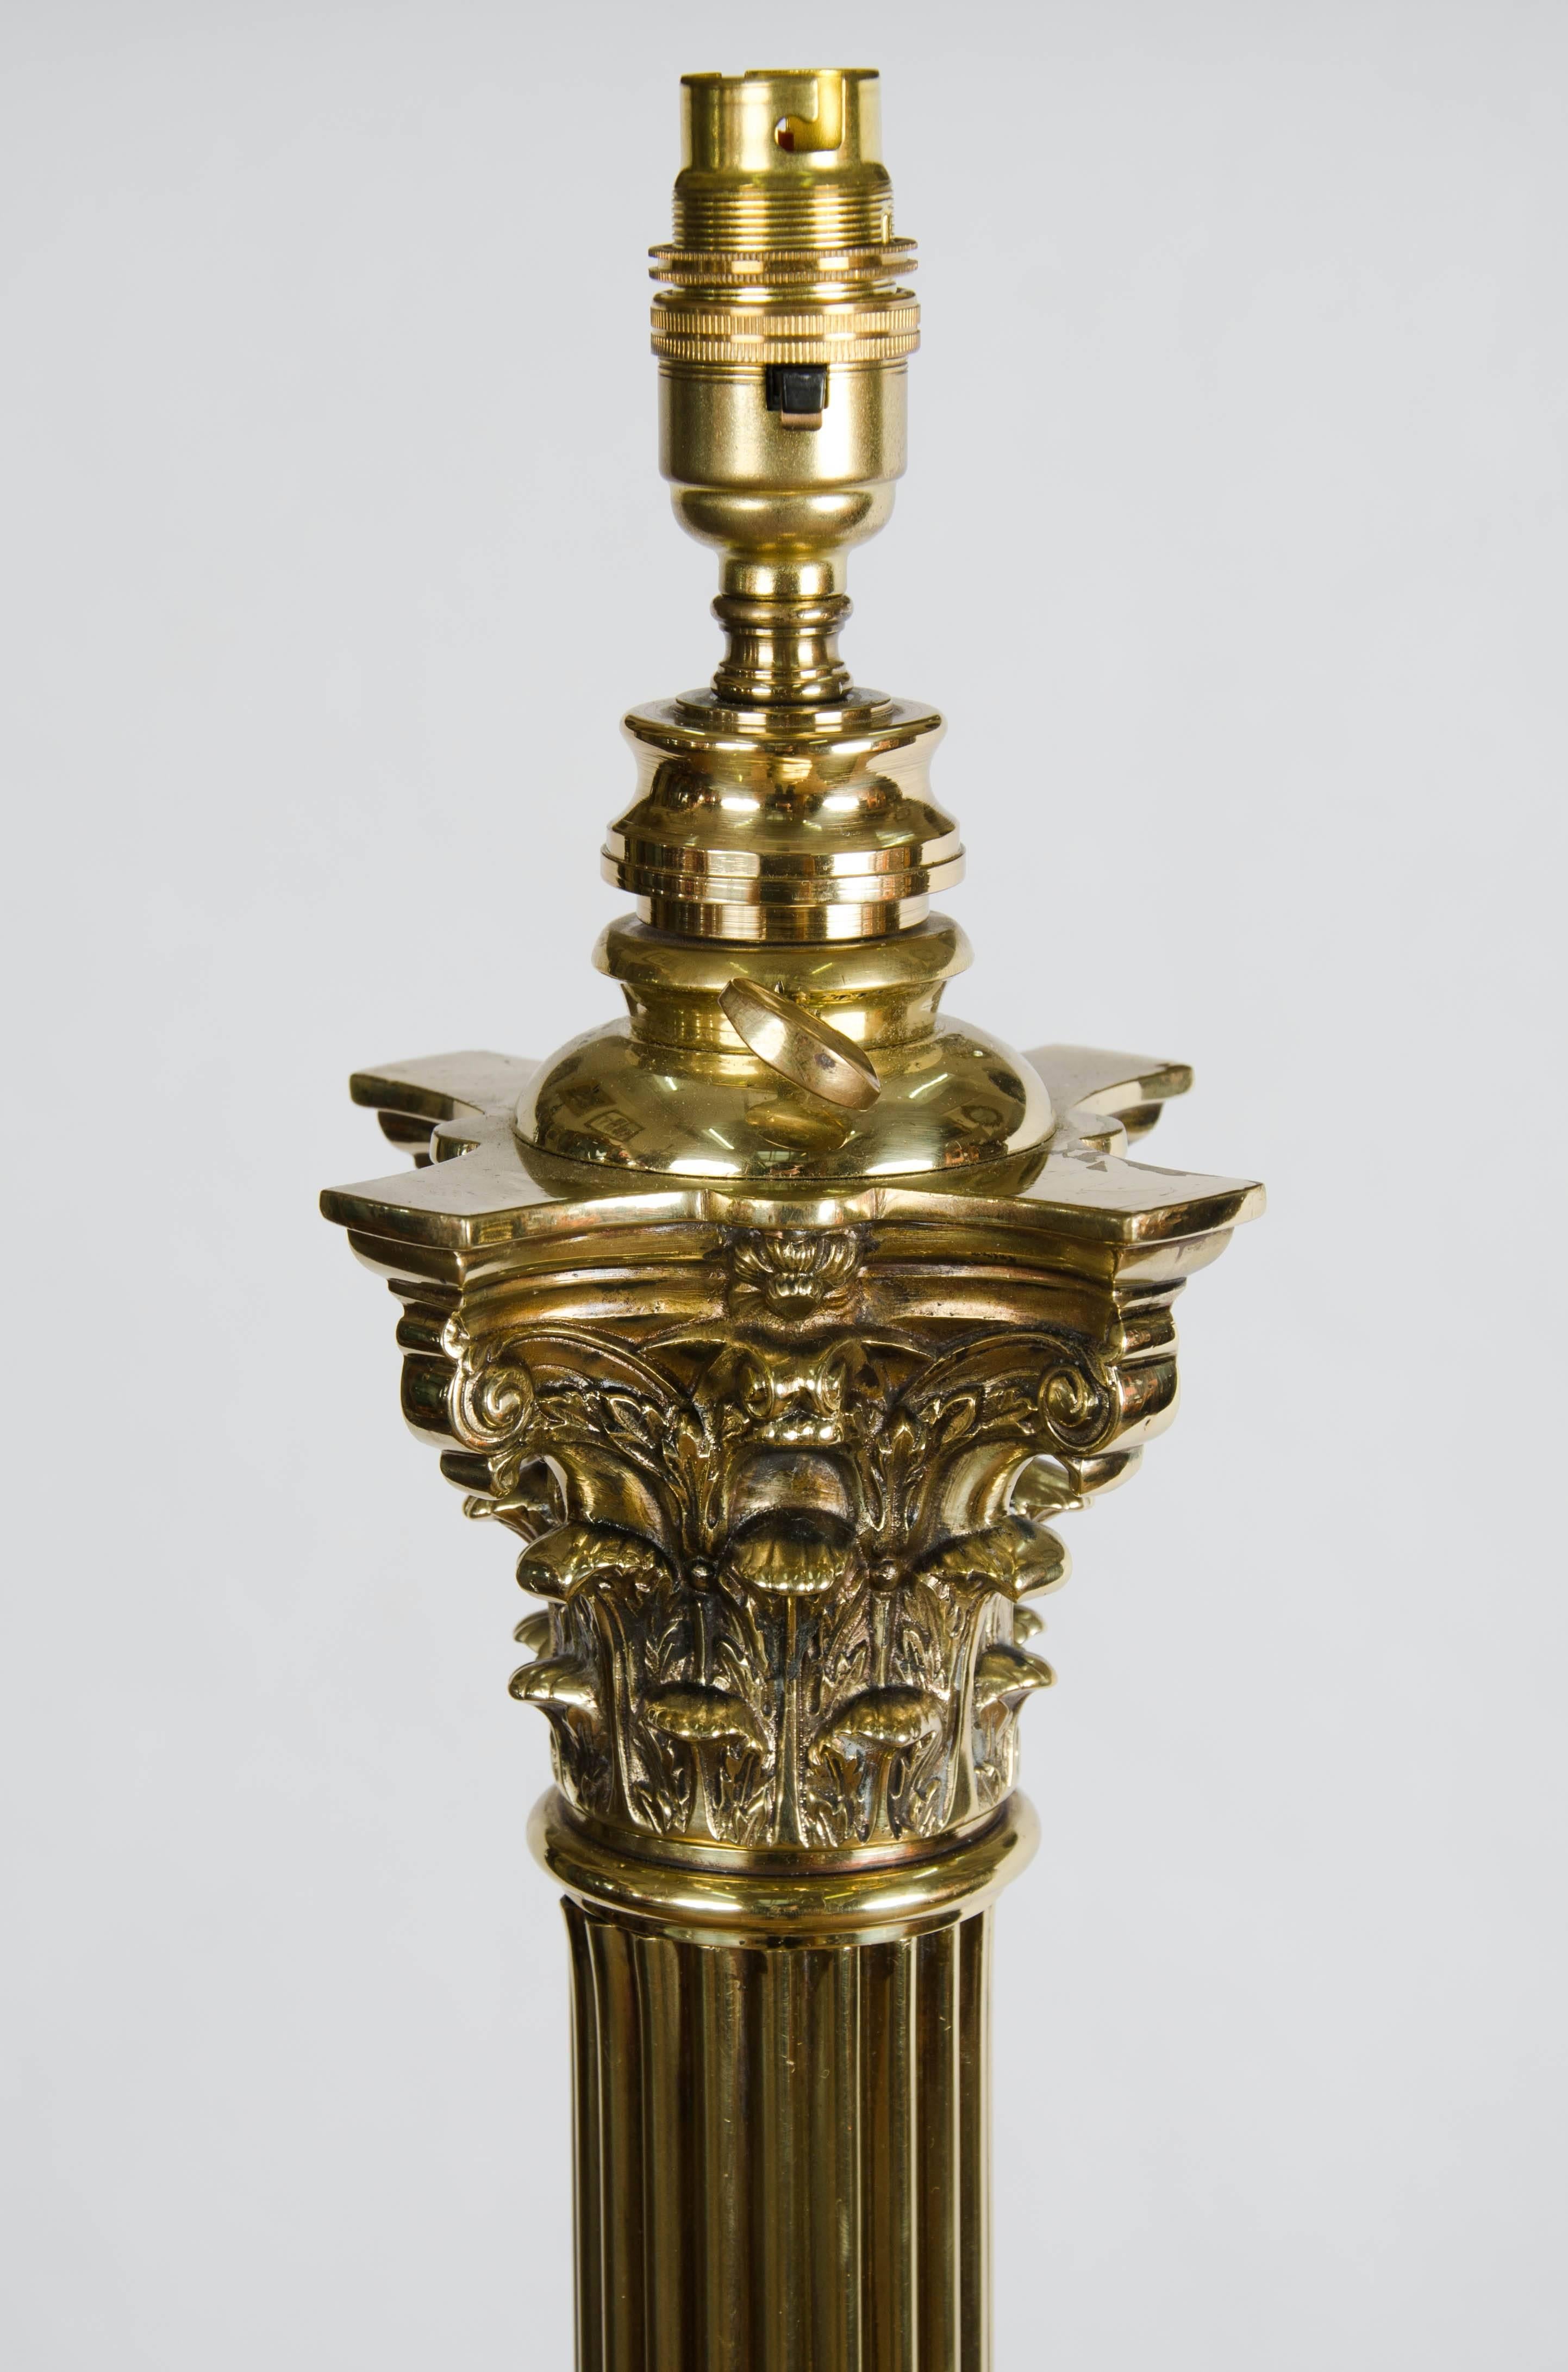 Lampe à colonne corinthienne de très bonne qualité, d'époque victorienne, avec une colonne cannelée, une base classique à gradins et des pieds griffus.